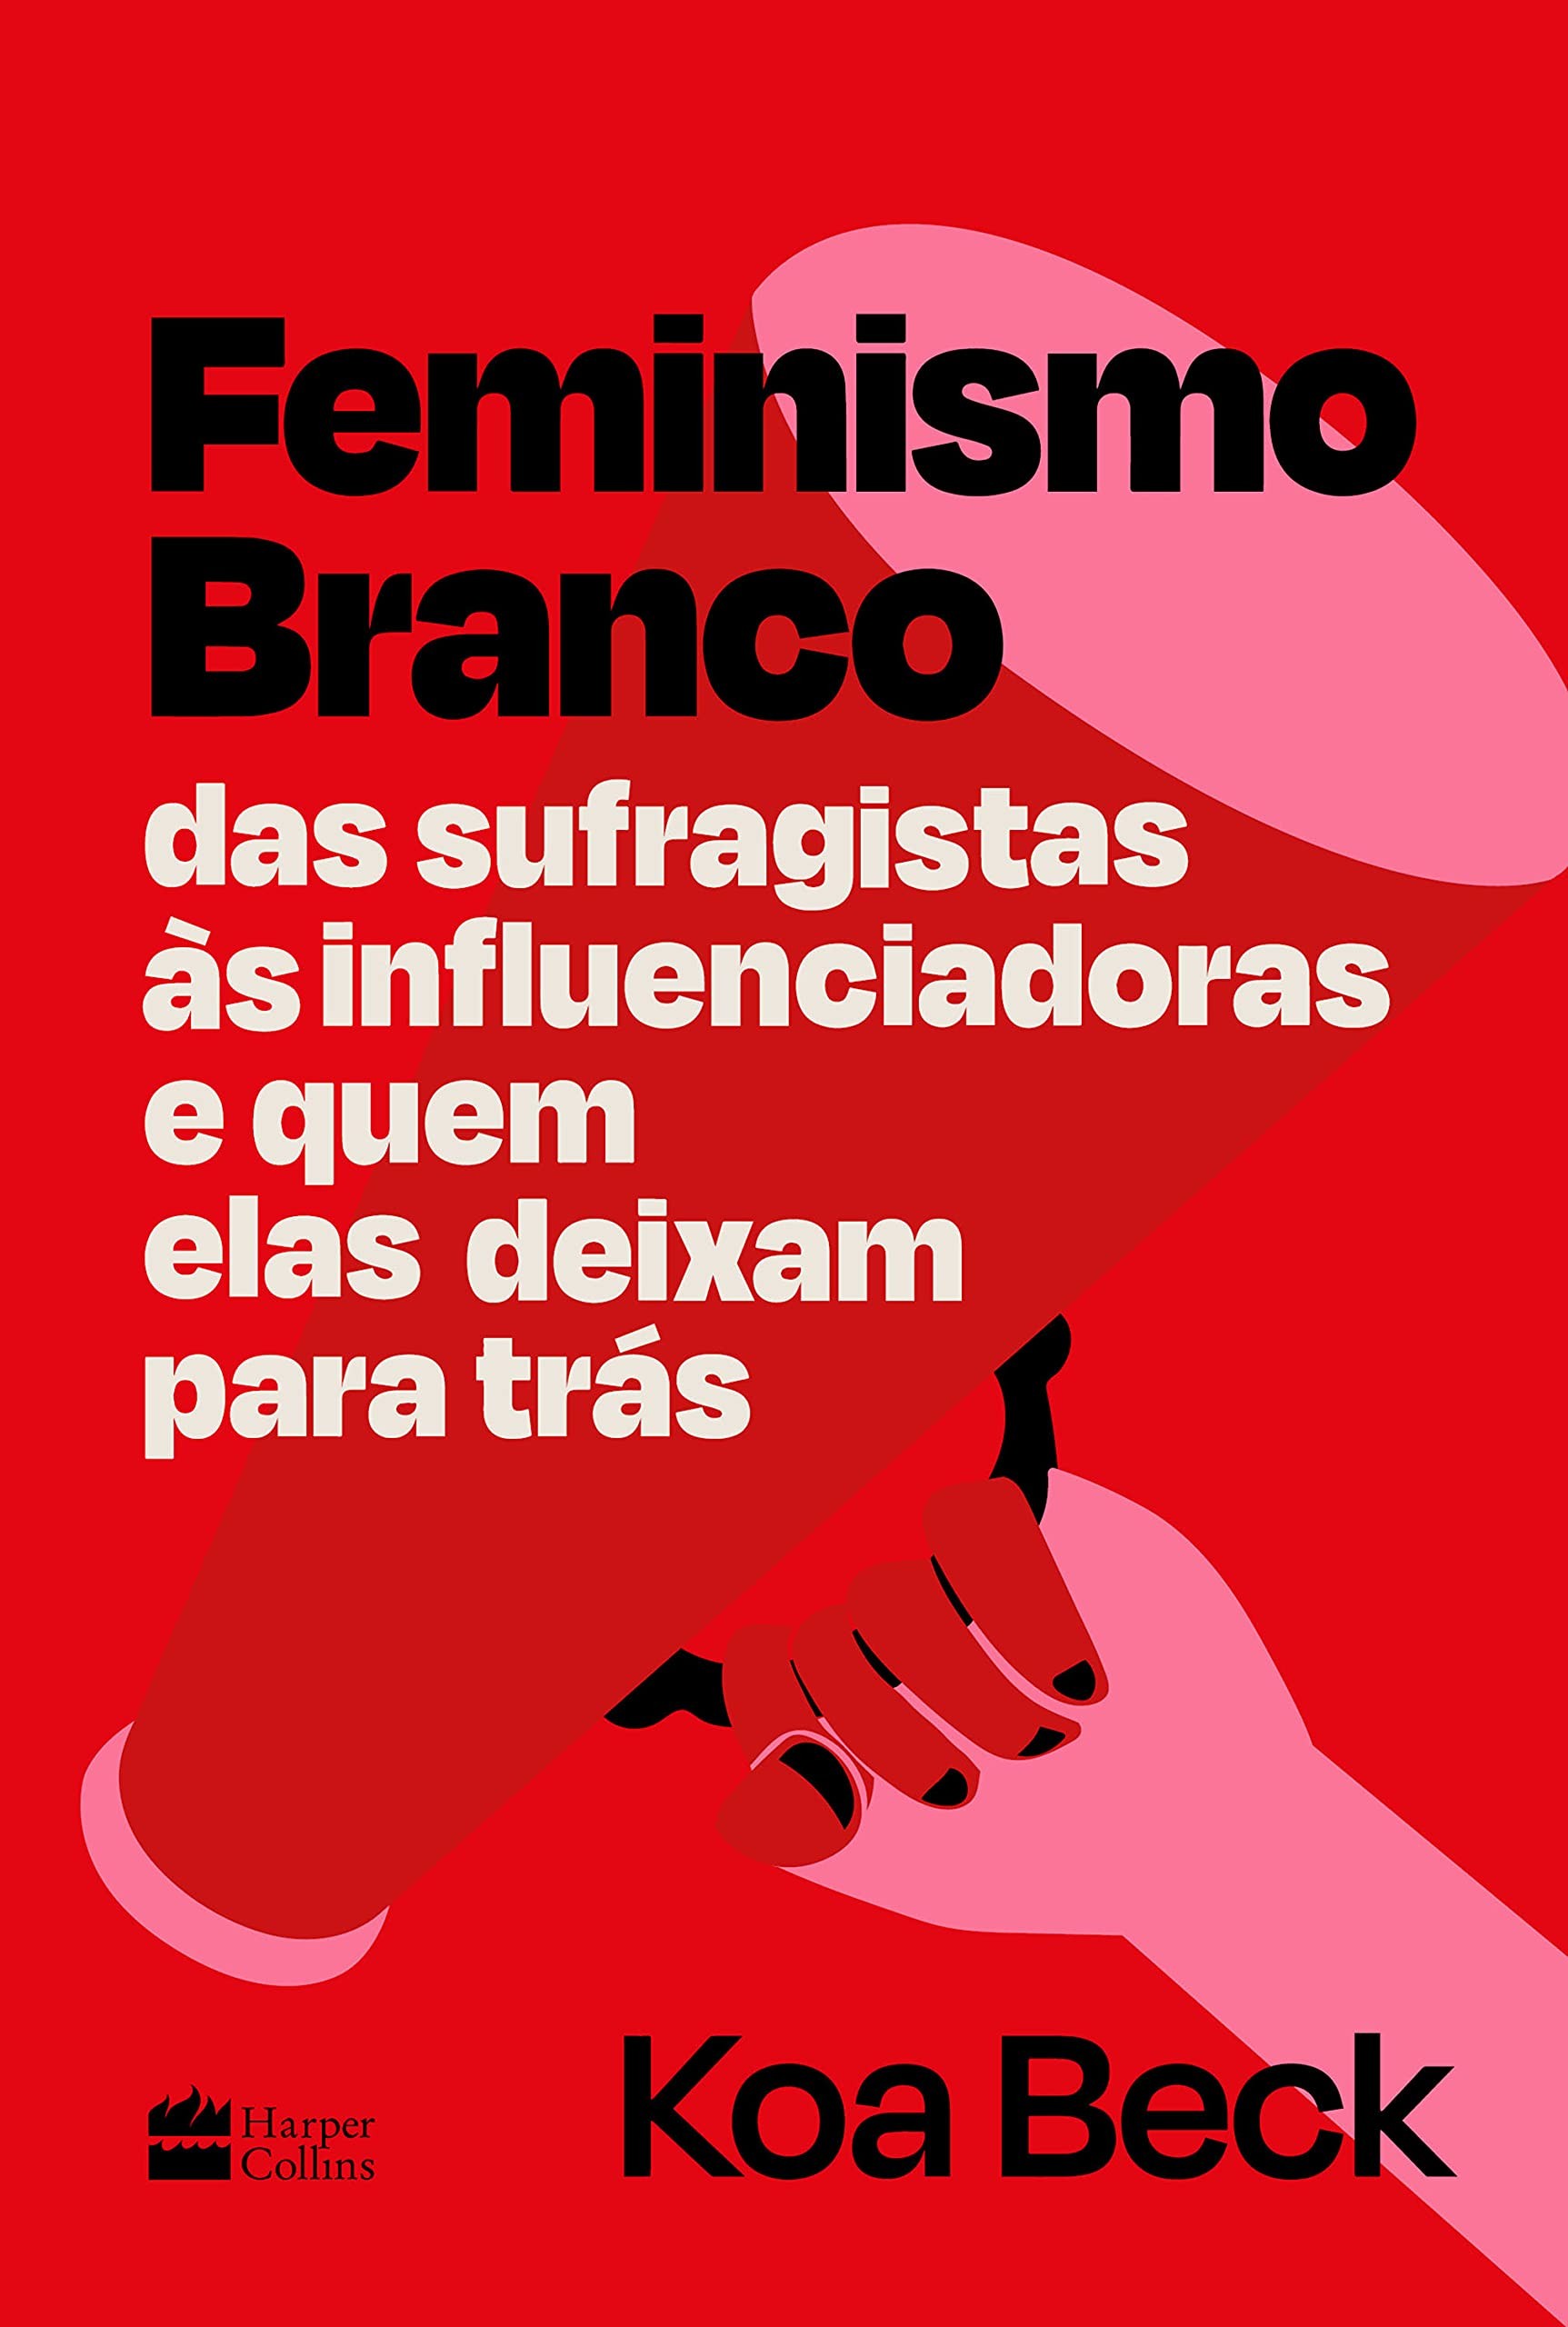 Capa de 'Feminismo Branco', editado no Brasil pela Harper Colins (Foto: Divulgação)